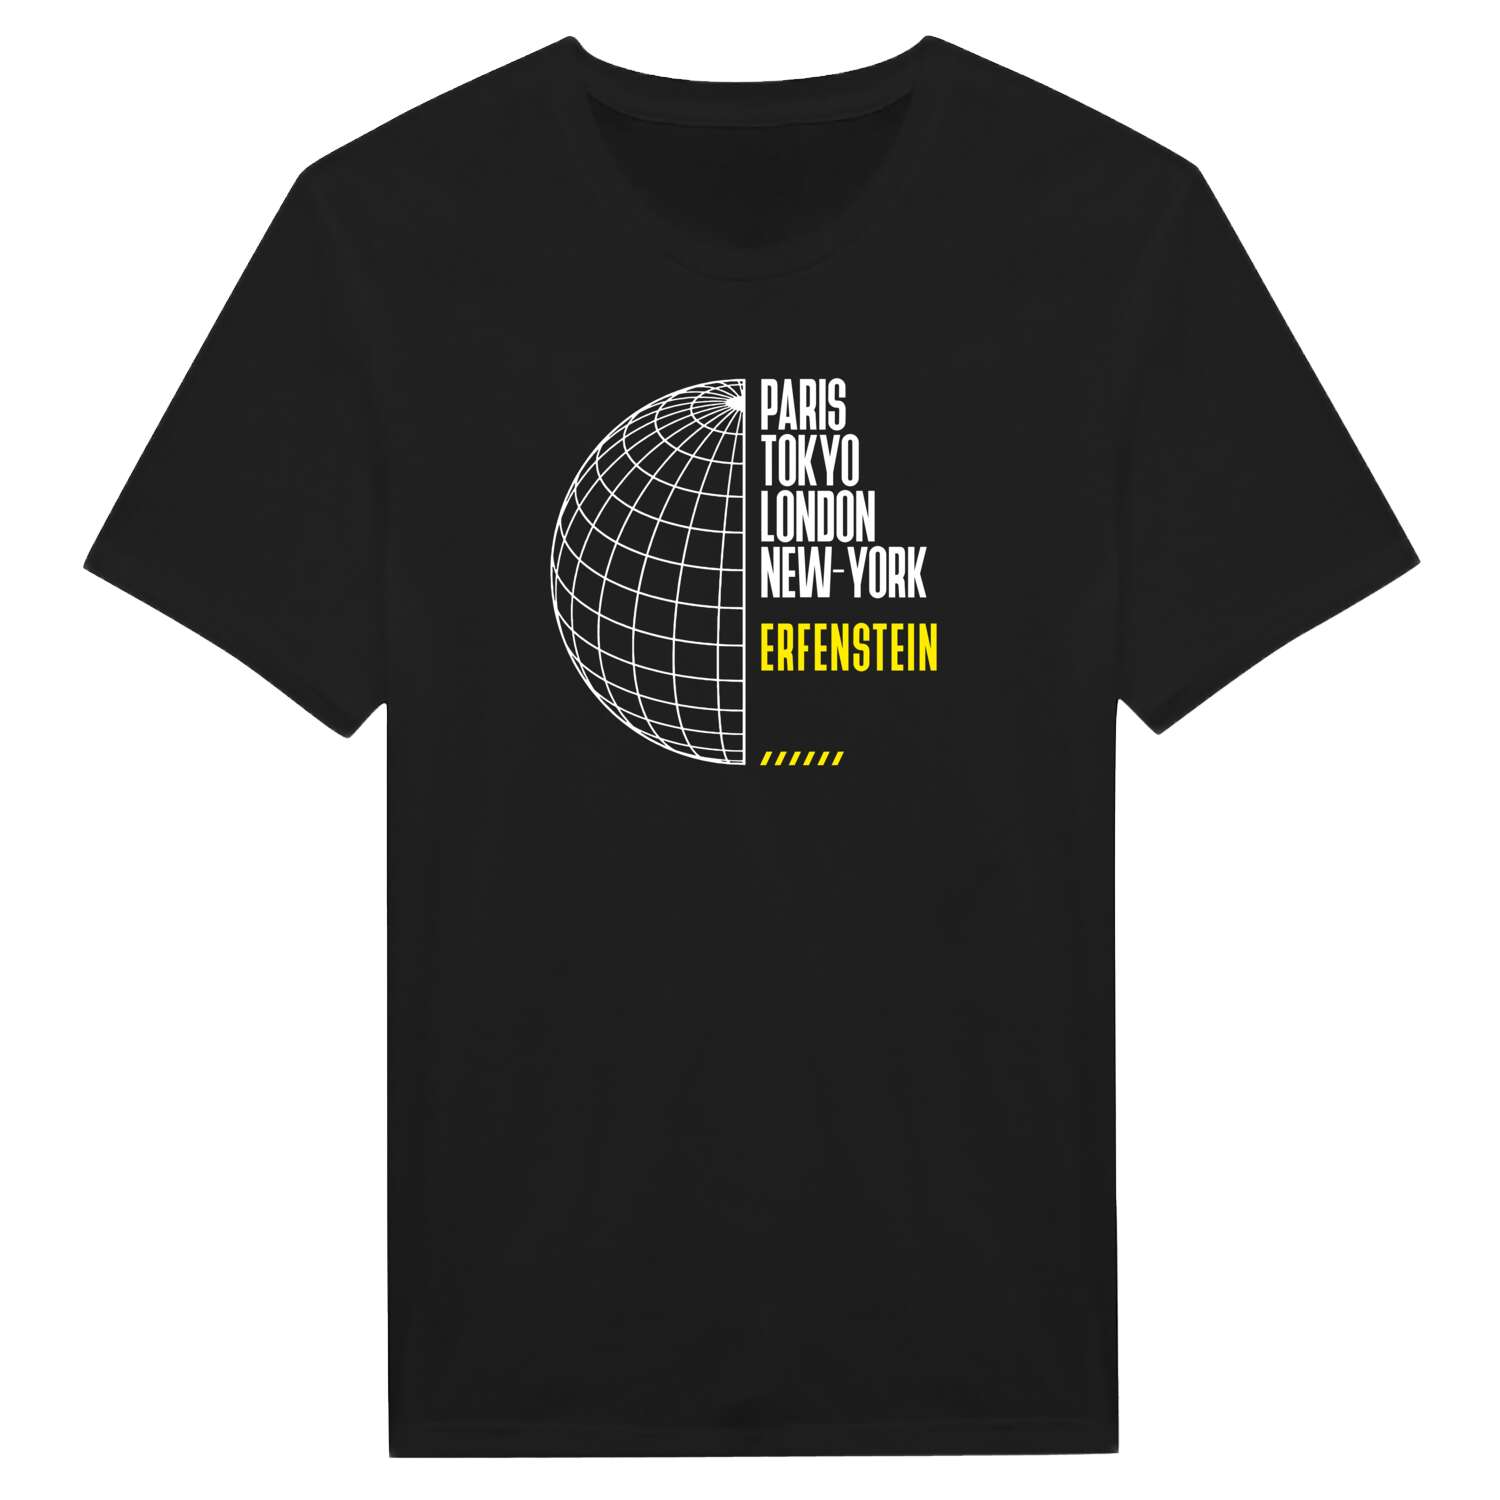 Erfenstein T-Shirt »Paris Tokyo London«